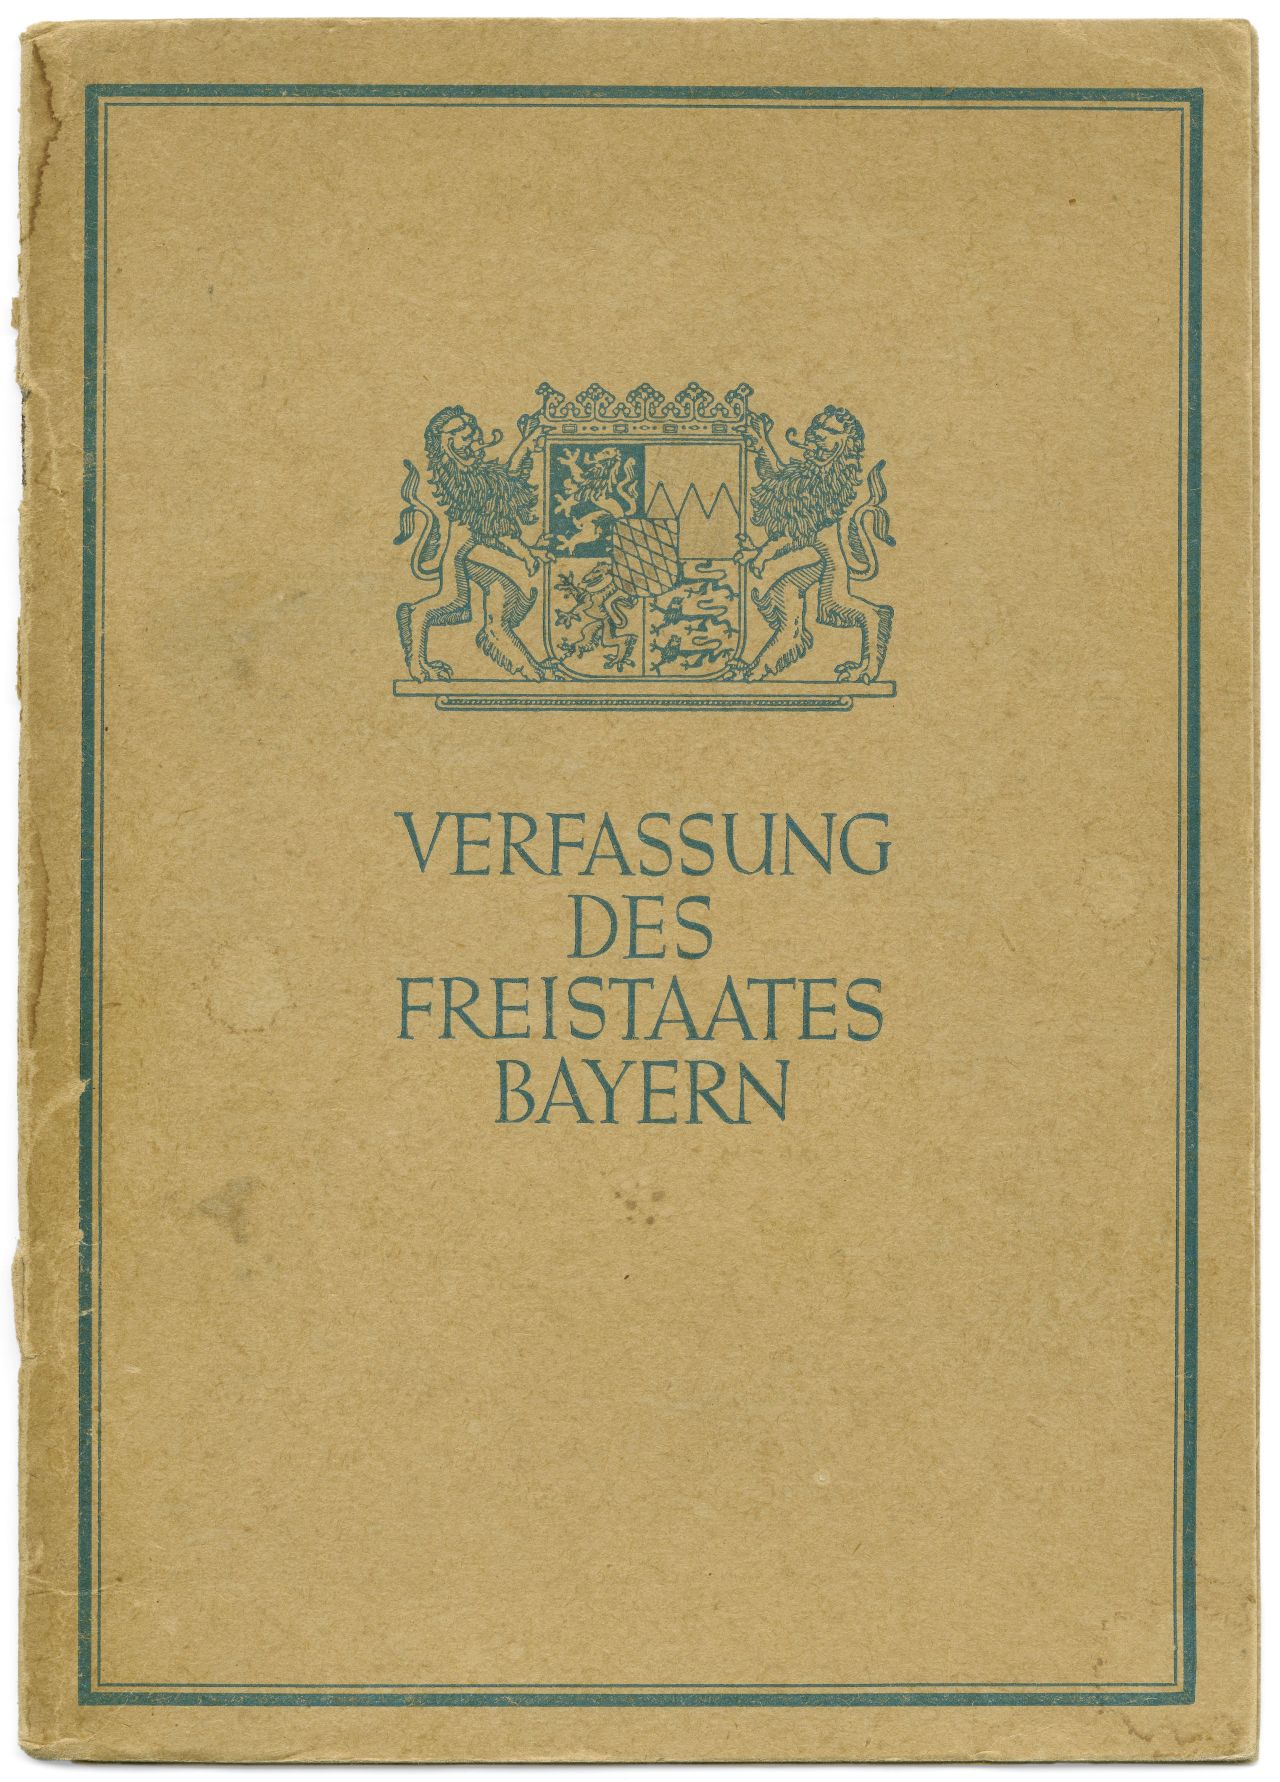 Verfassung des Freistaats Bayern